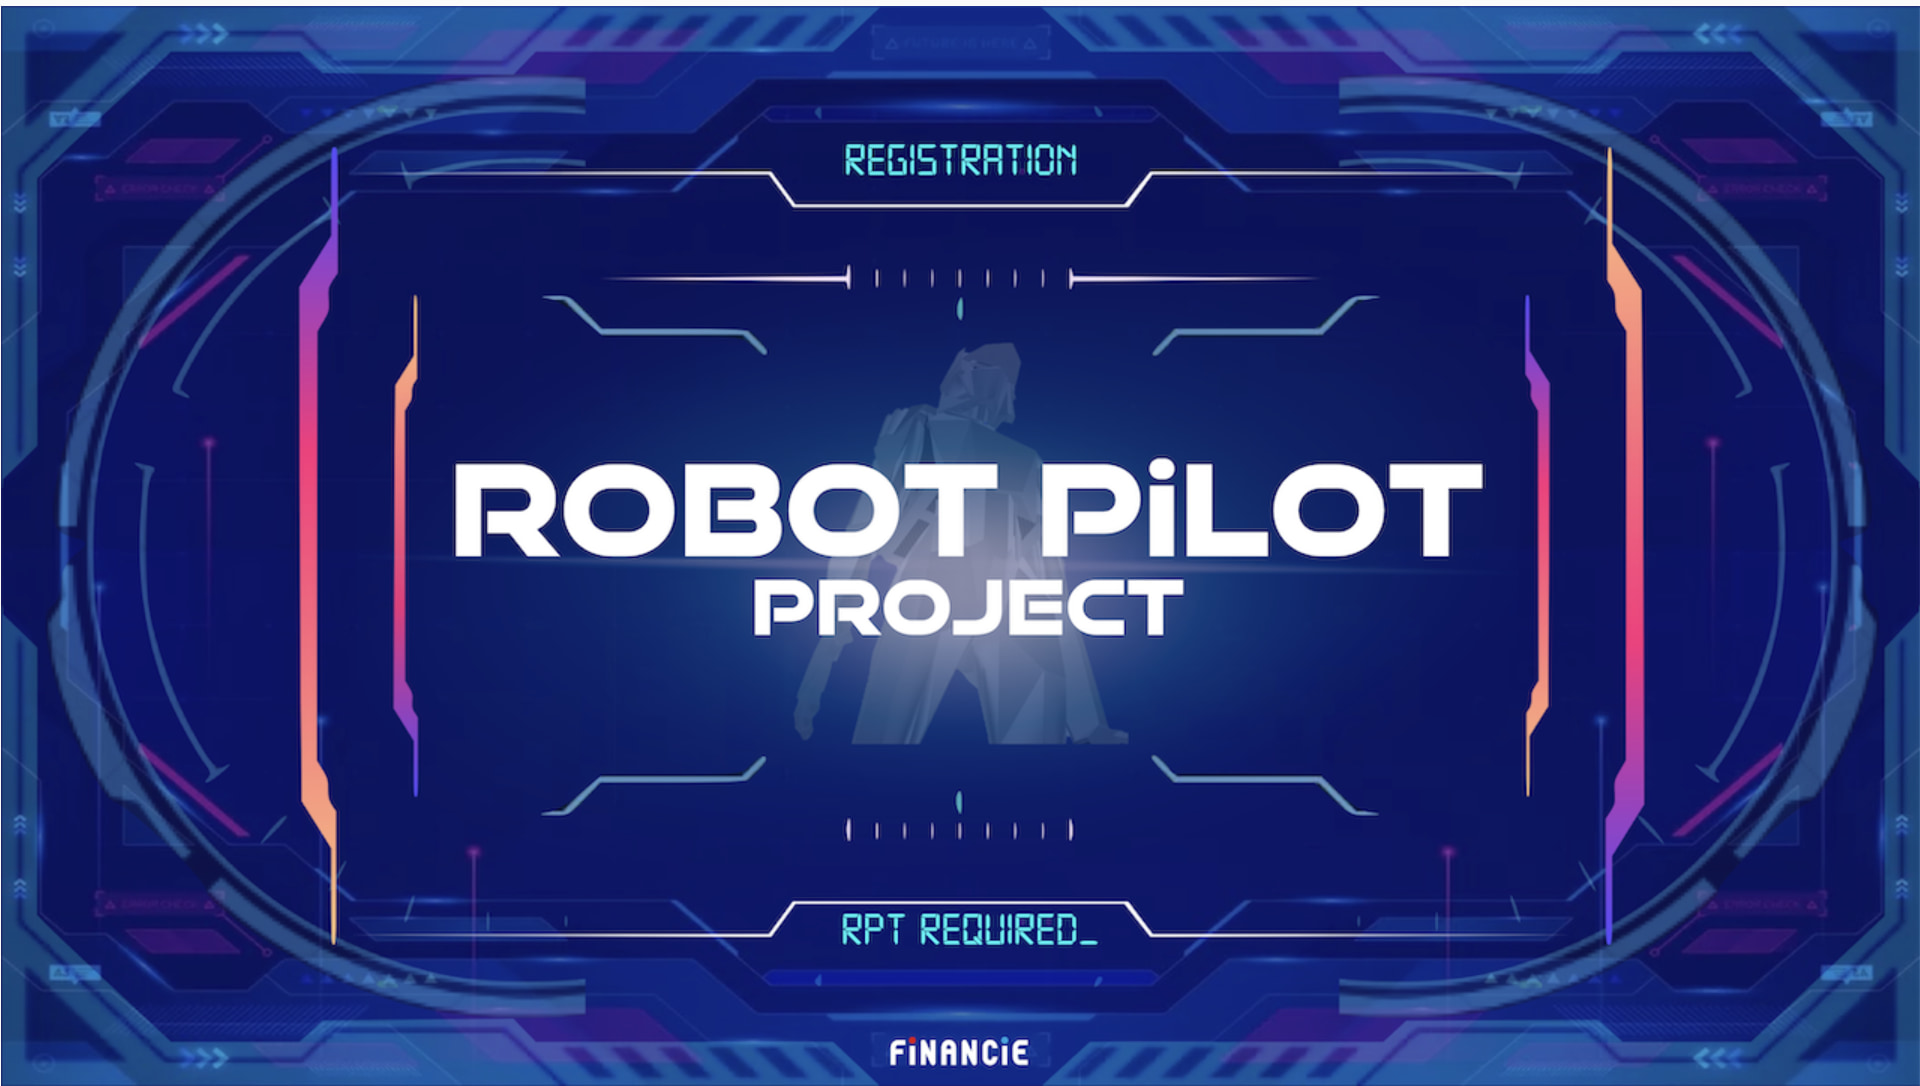 ROBOT PILOT PROJECT